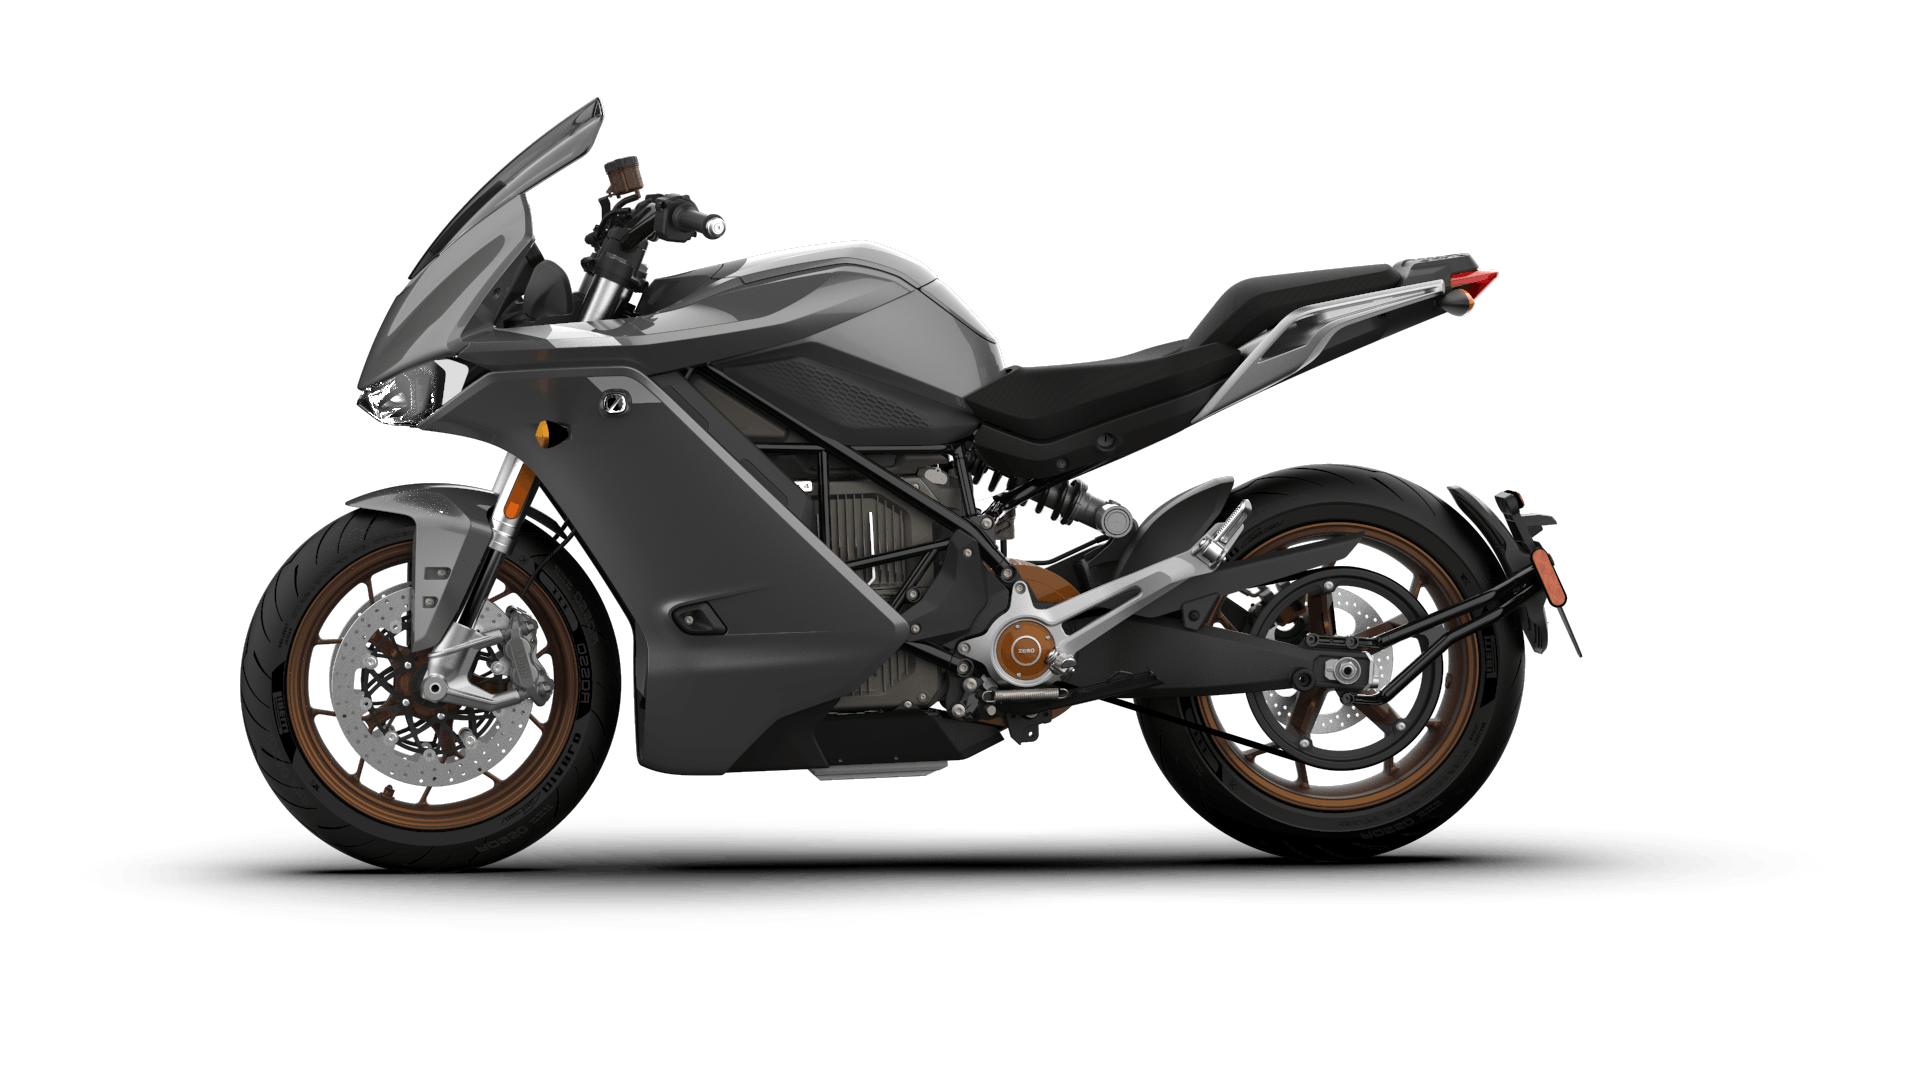 Zero Motorcycles SR/S